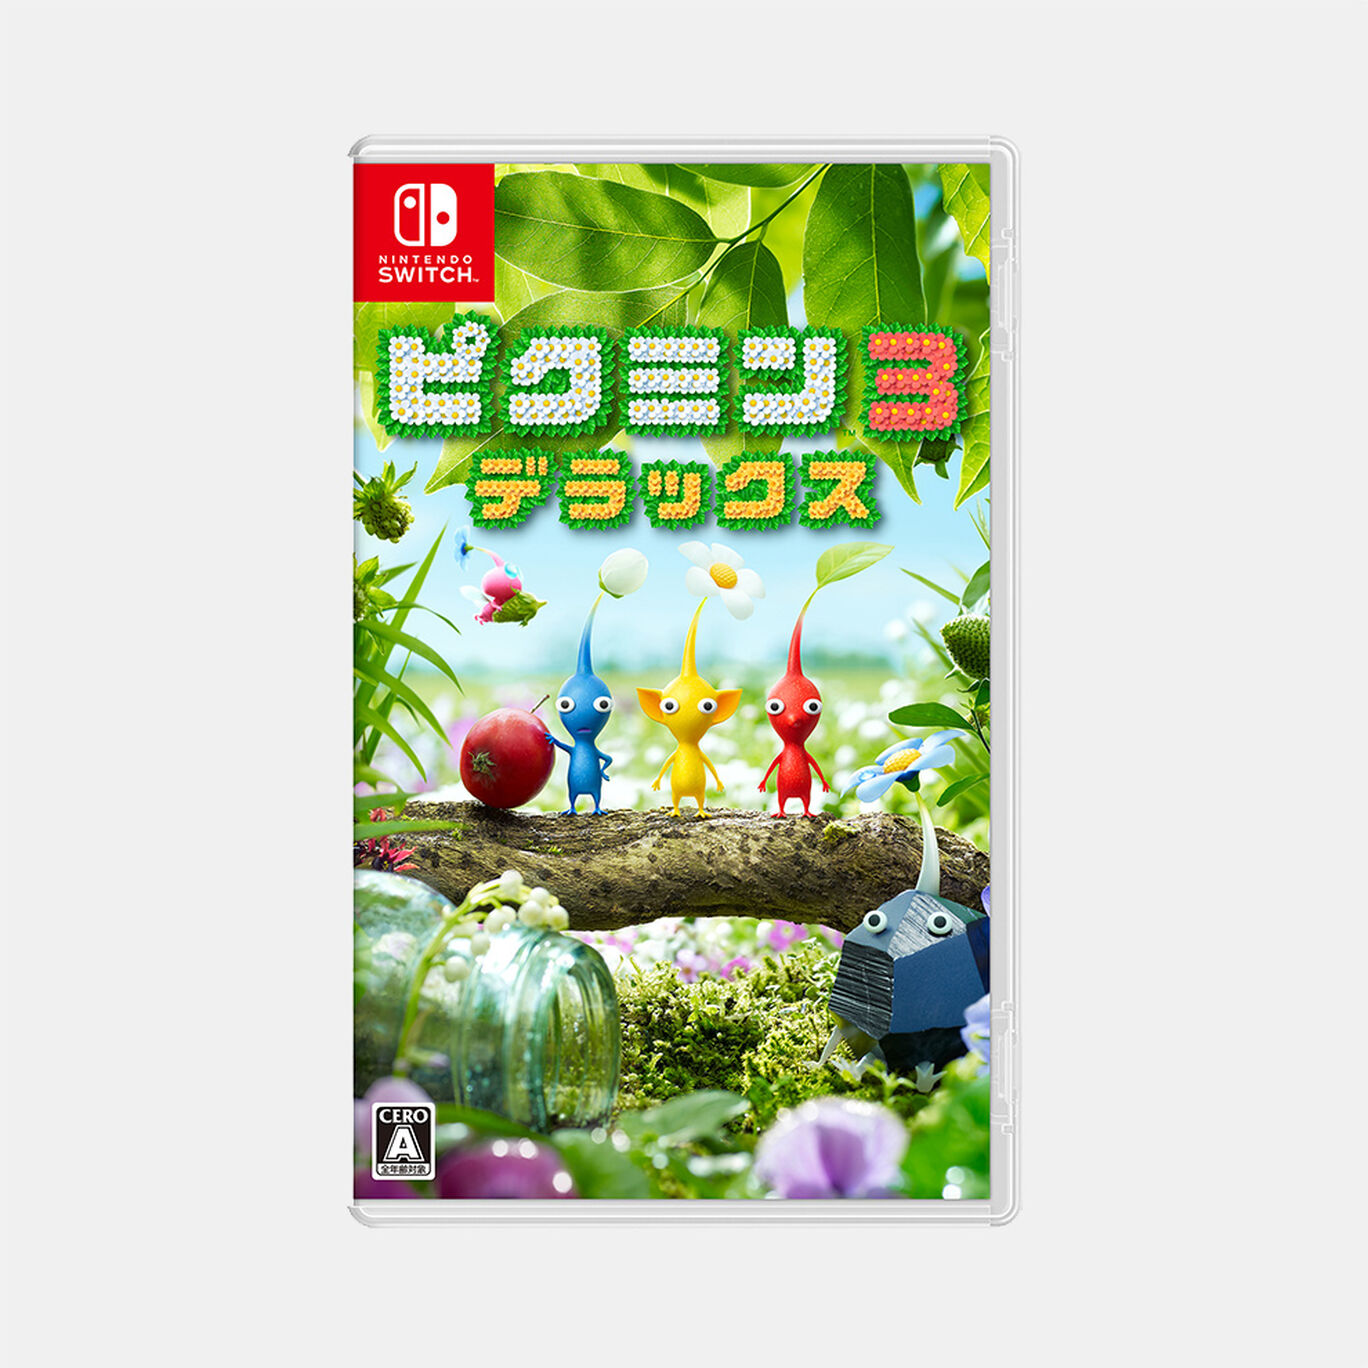 ピクミン3 デラックス パッケージ版 | My Nintendo Store（マイニンテンドーストア）